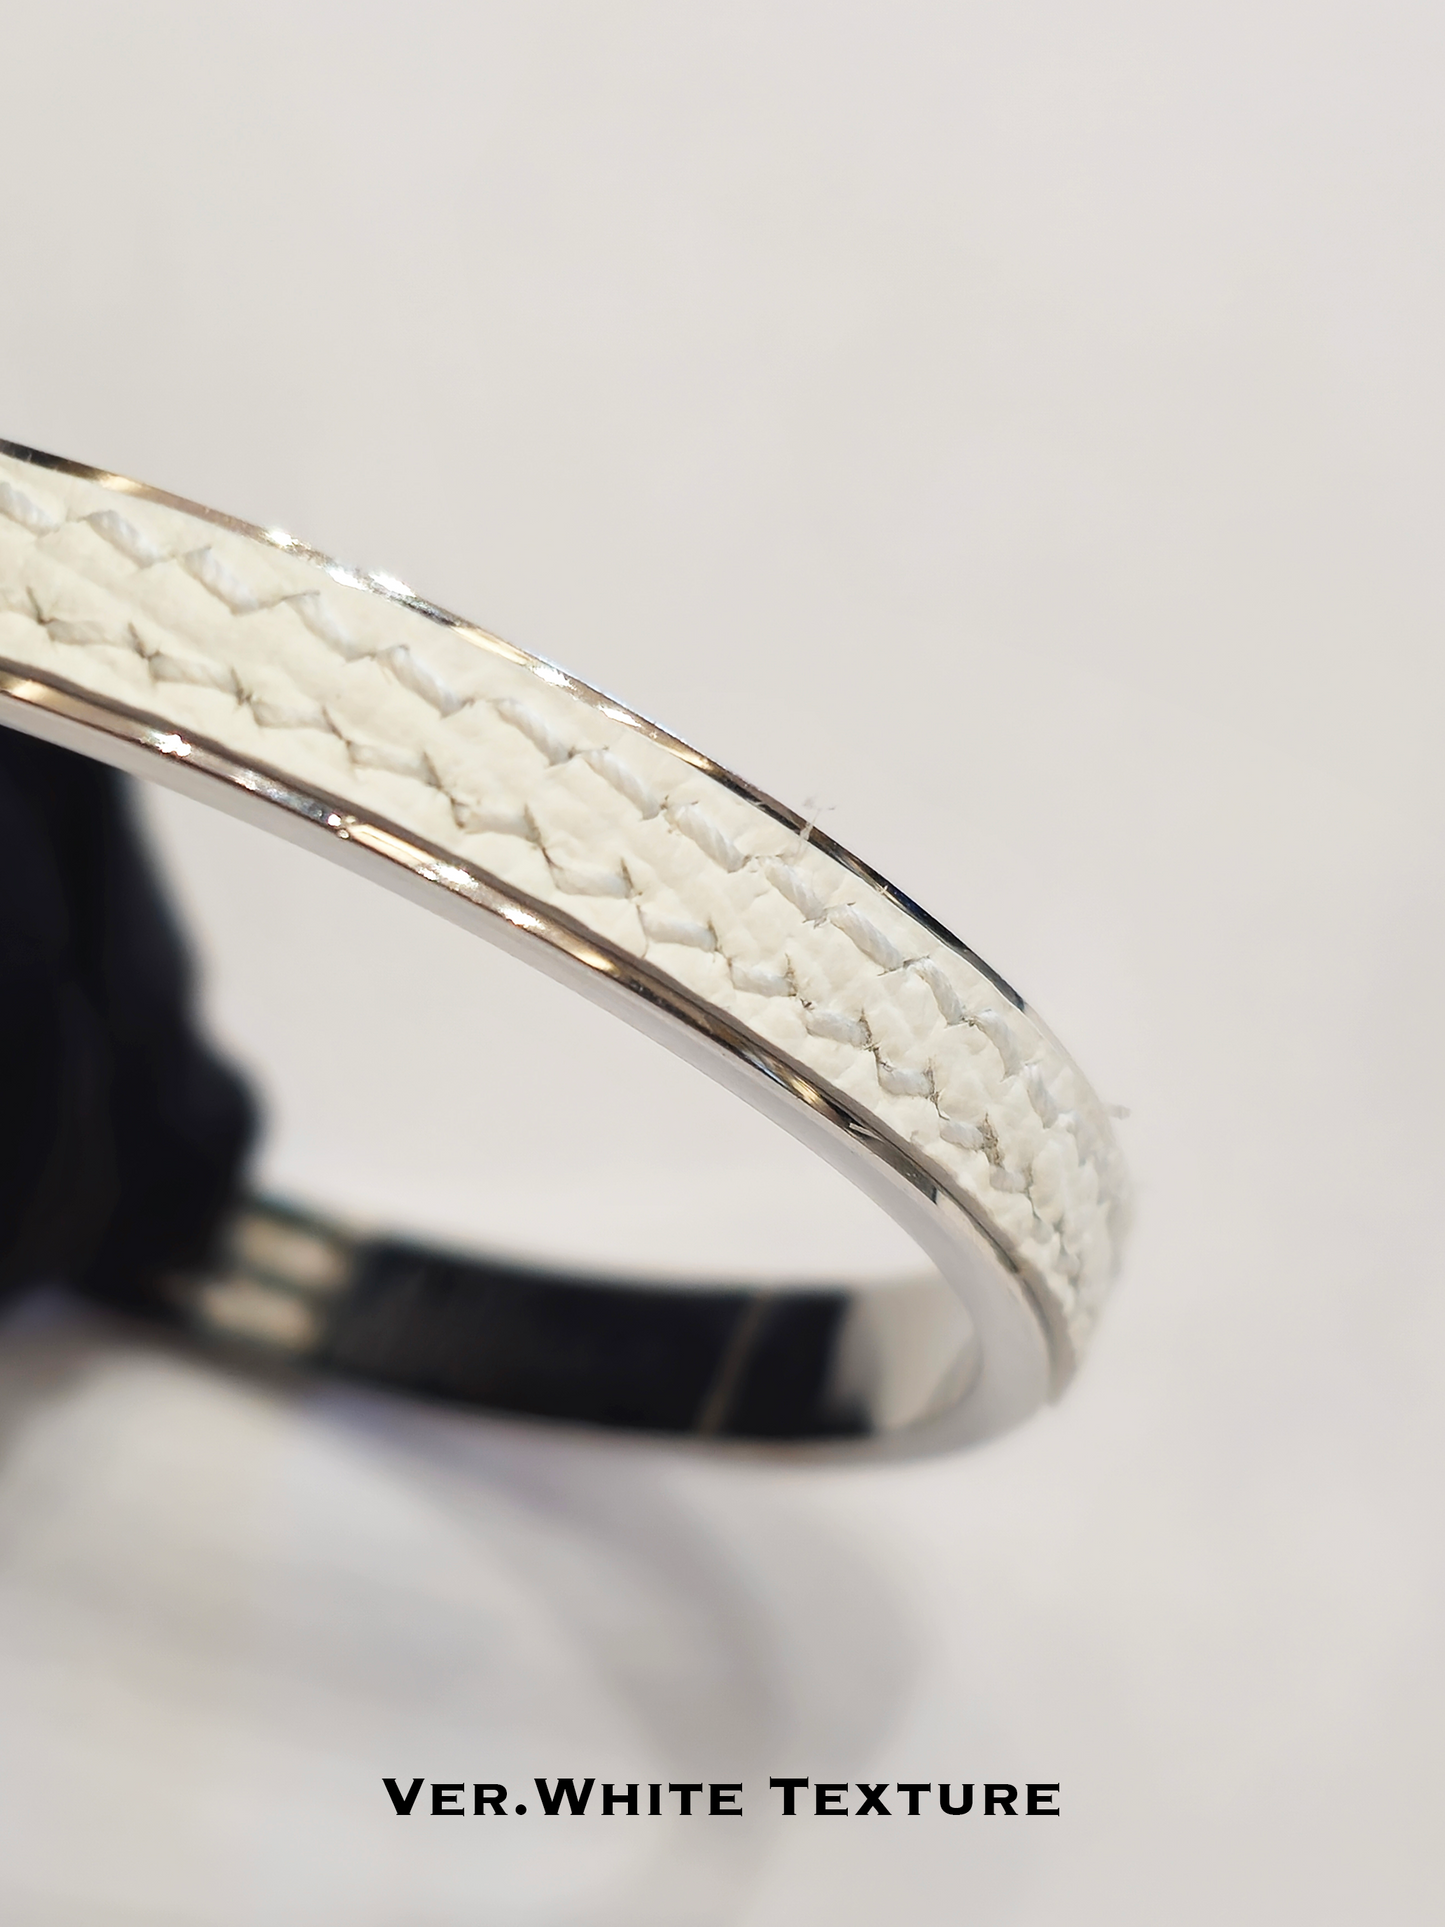 Twined Leather Bracelet, Large, White (Plain), White Nacre